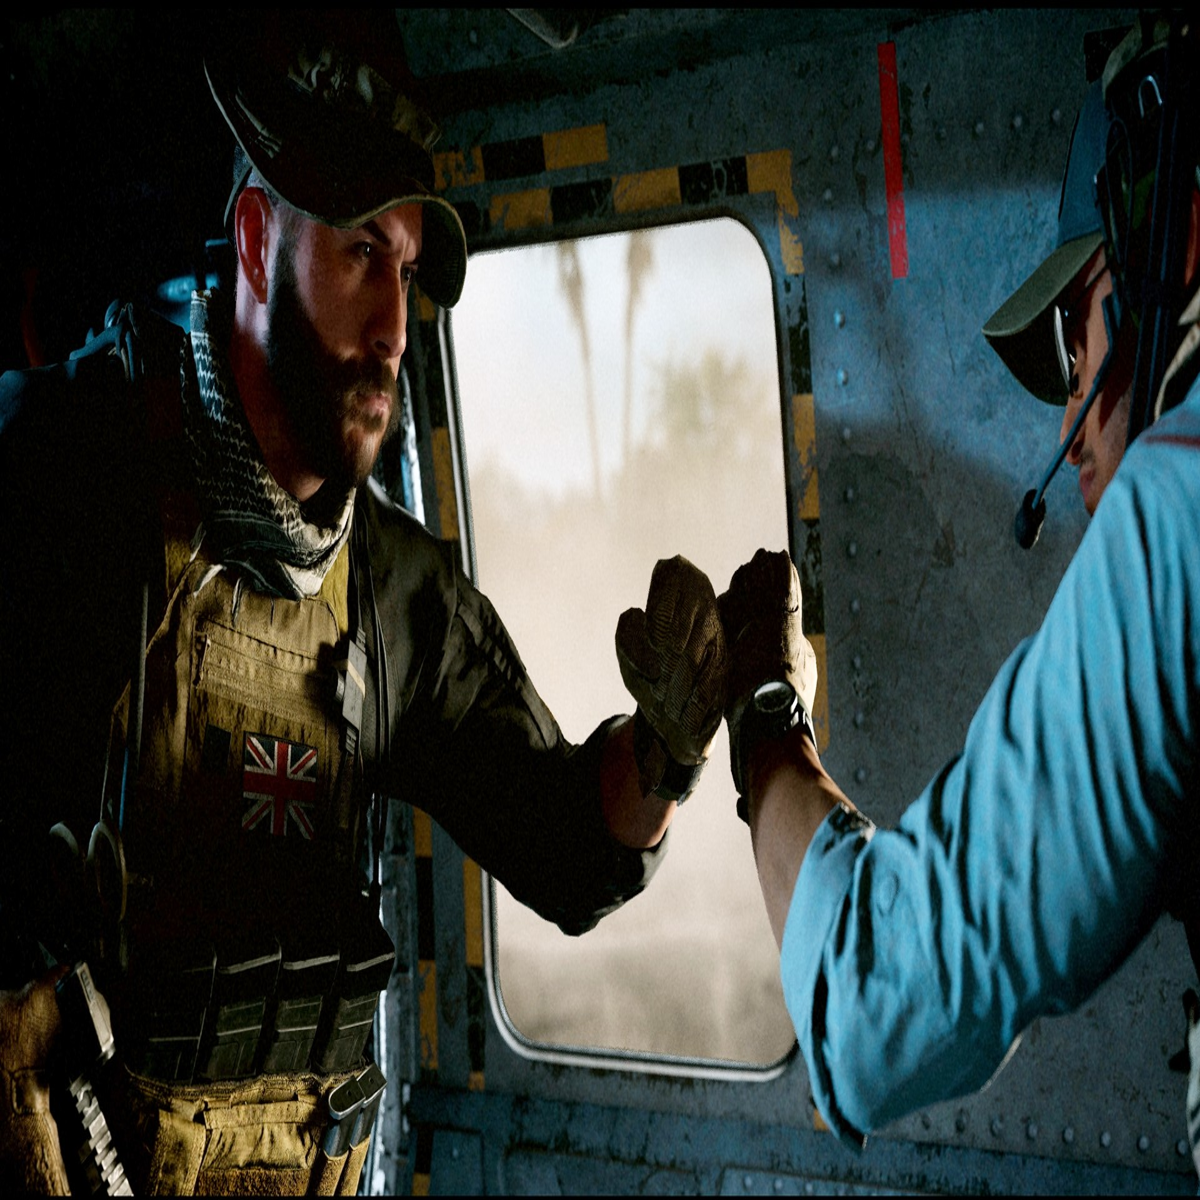 Call of Duty: Modern Warfare III PC Trailer, Specs, Preloading